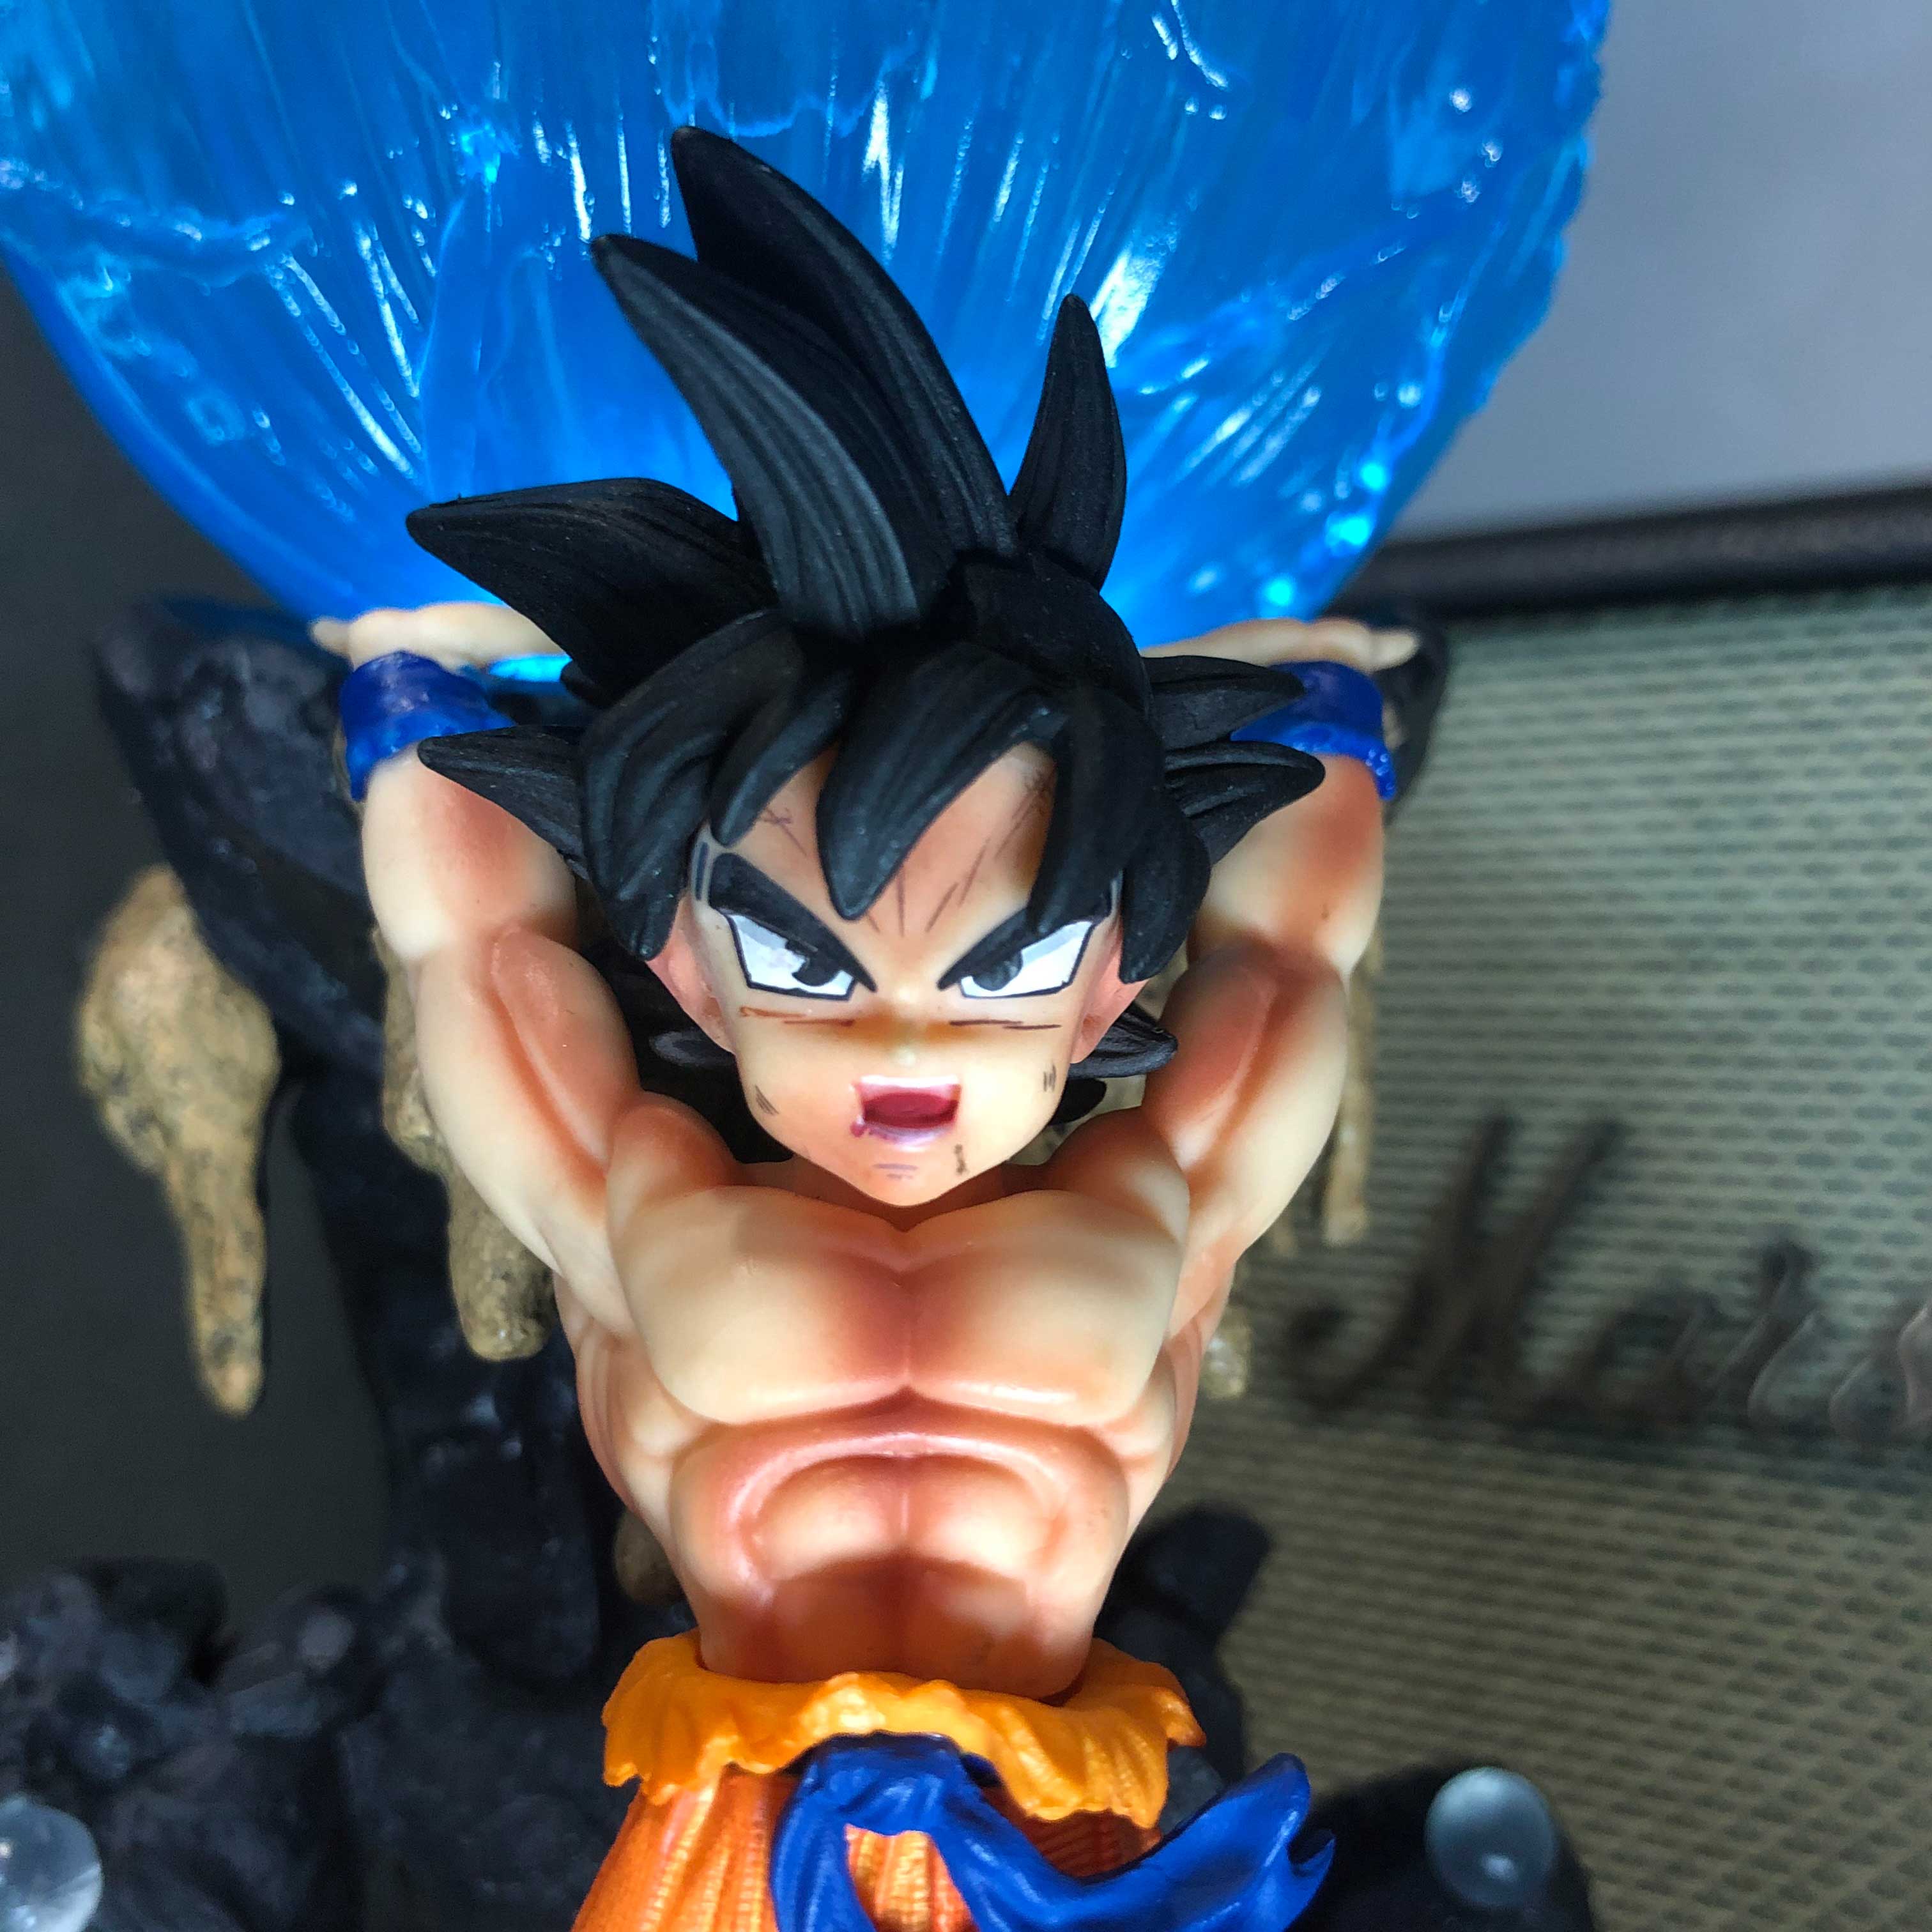 Mô hình Son Goku nâng cầu 25cm - 50 cm có LED - Dragon Ball